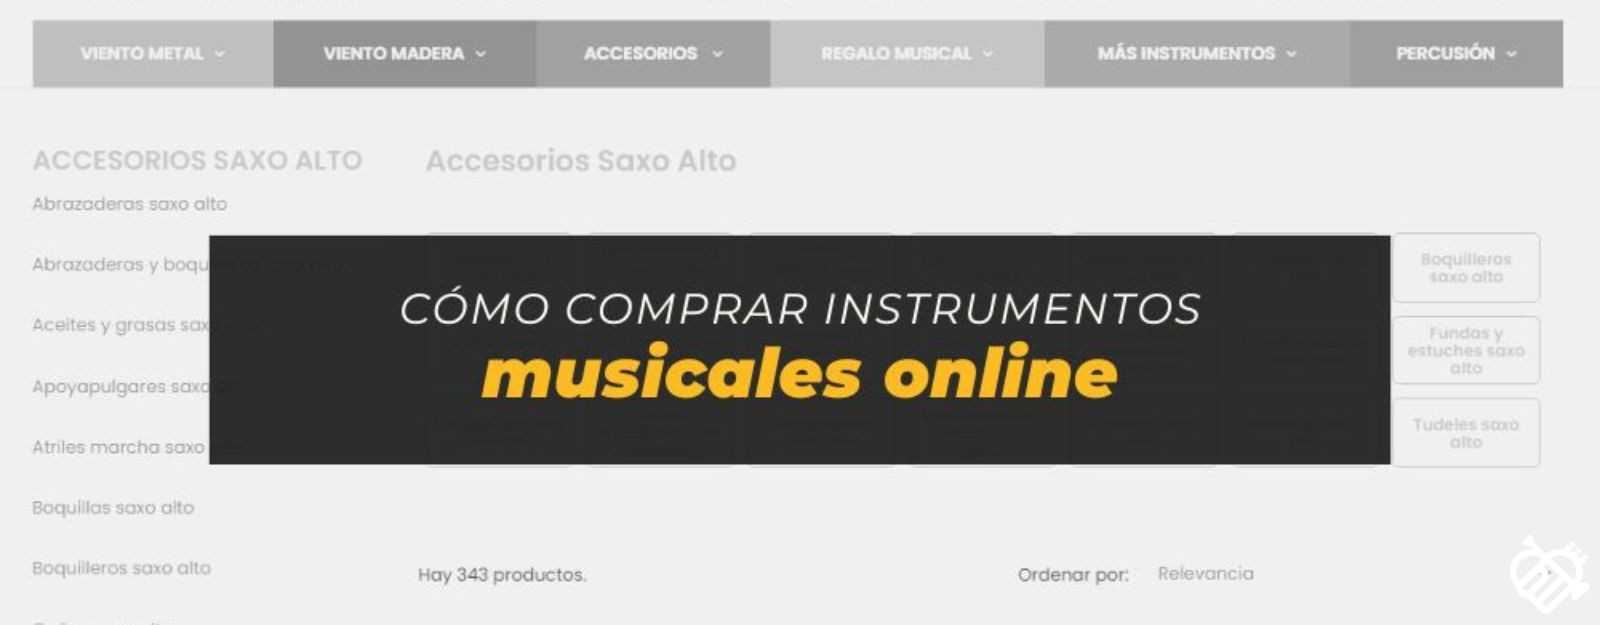 Cómo comprar instrumentos musicales online